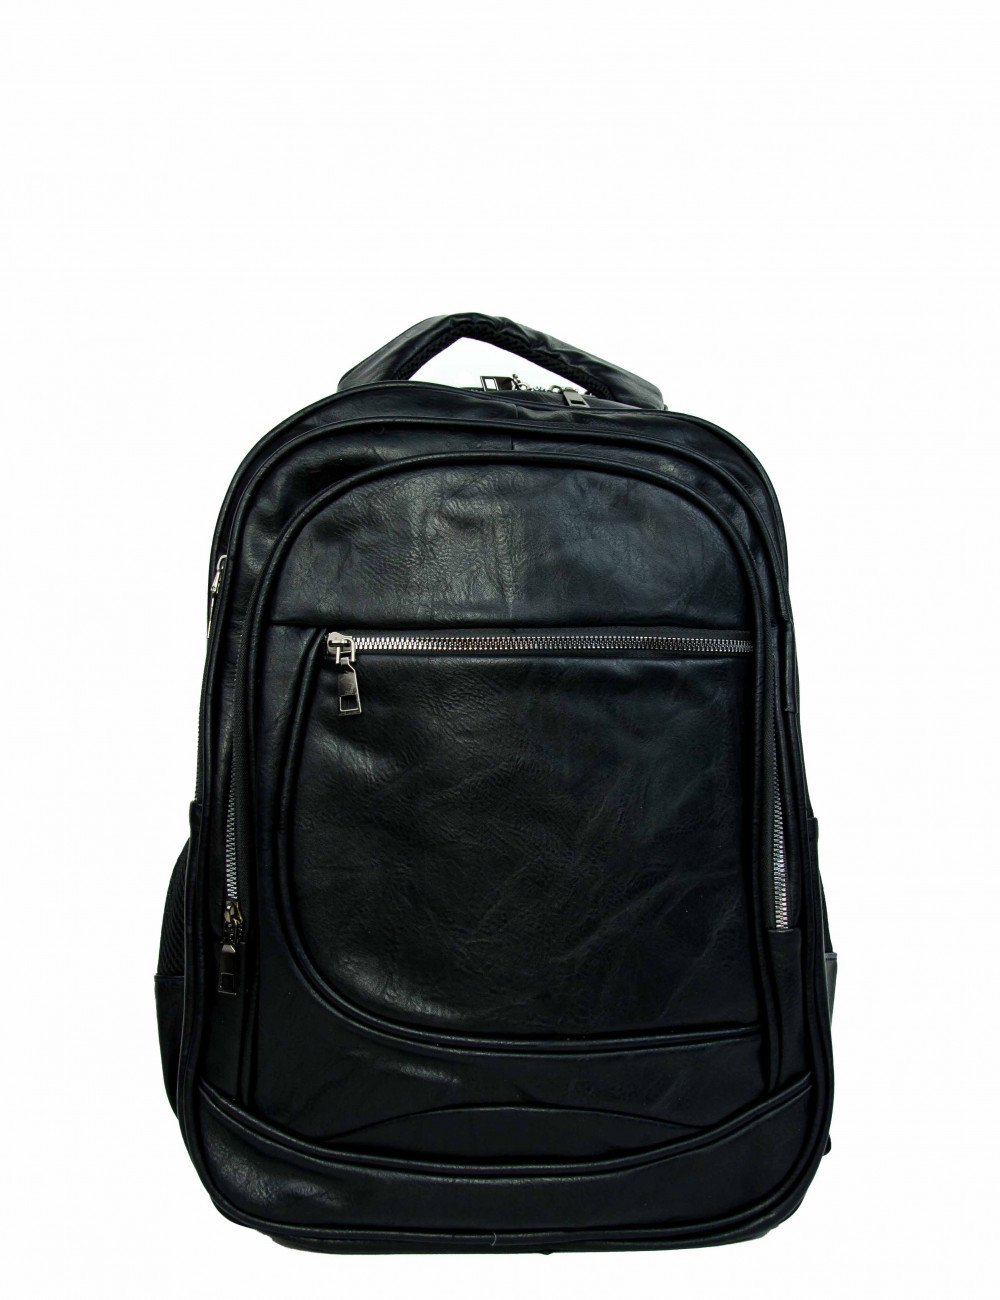 Ανδρικό μαύρο Back Pack δερματίνη με εξωτερική τσέπη 10312